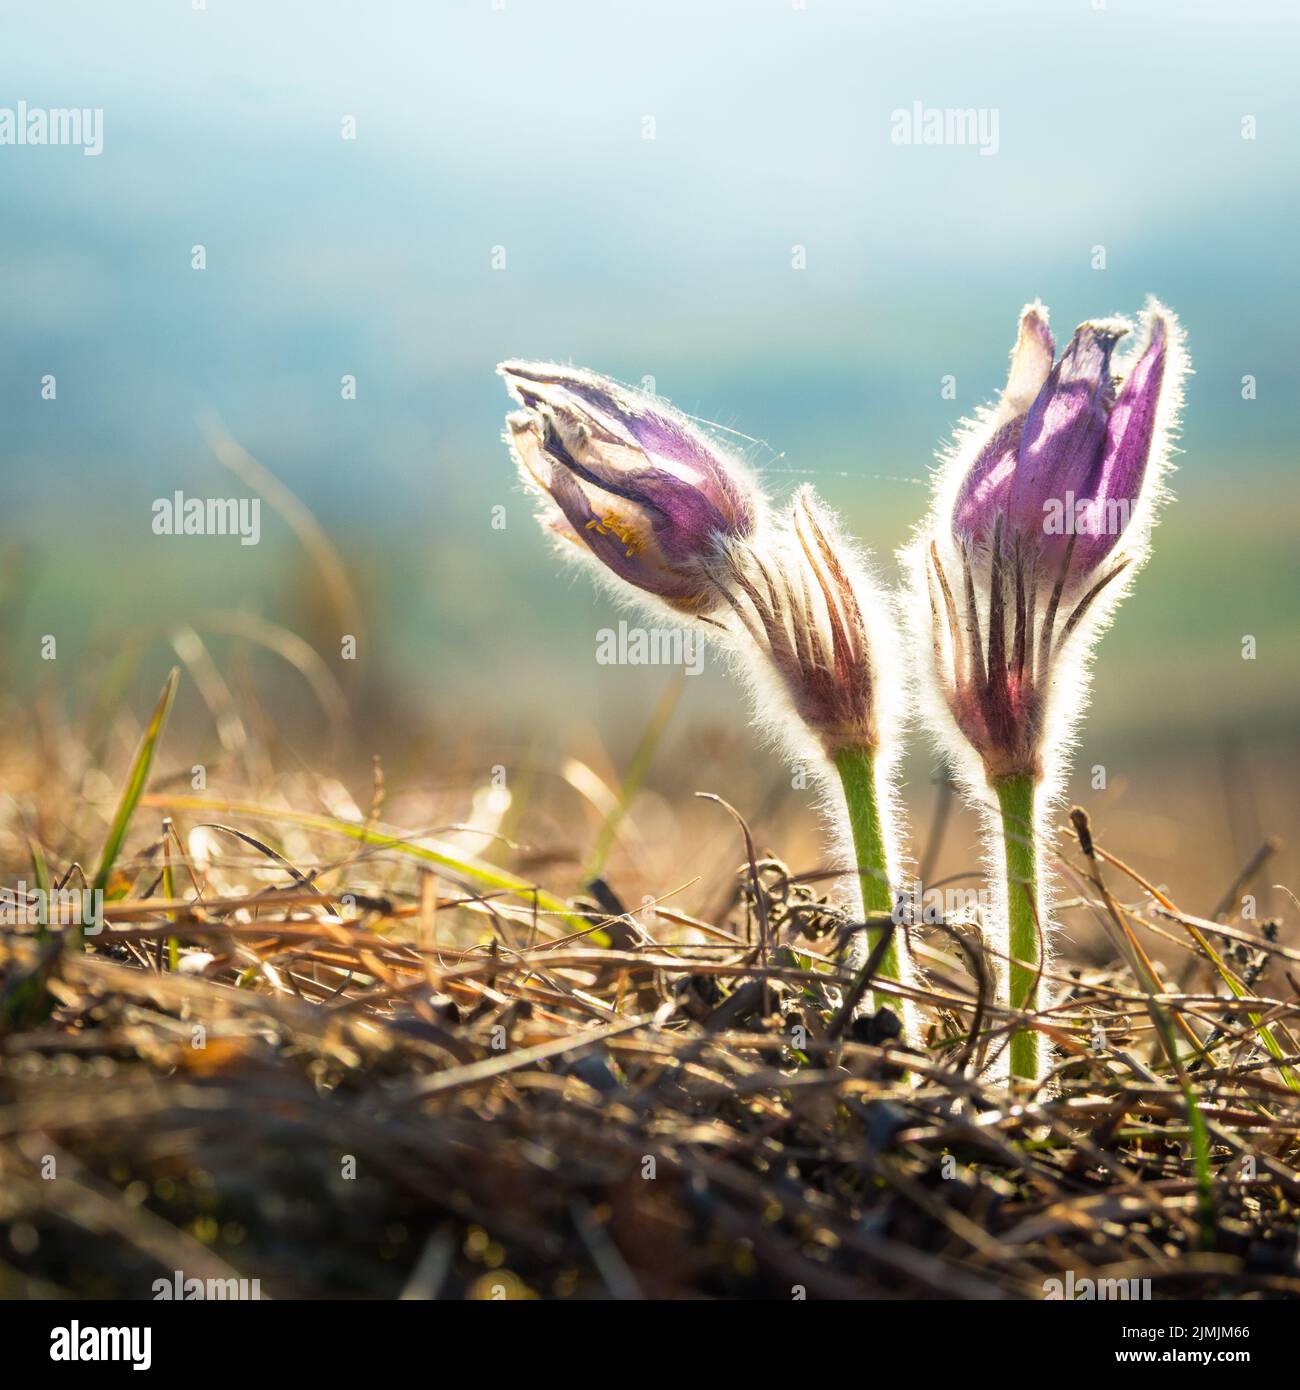 Primer plano de una flor de pasque púrpura imaginado durante la primavera Foto de stock